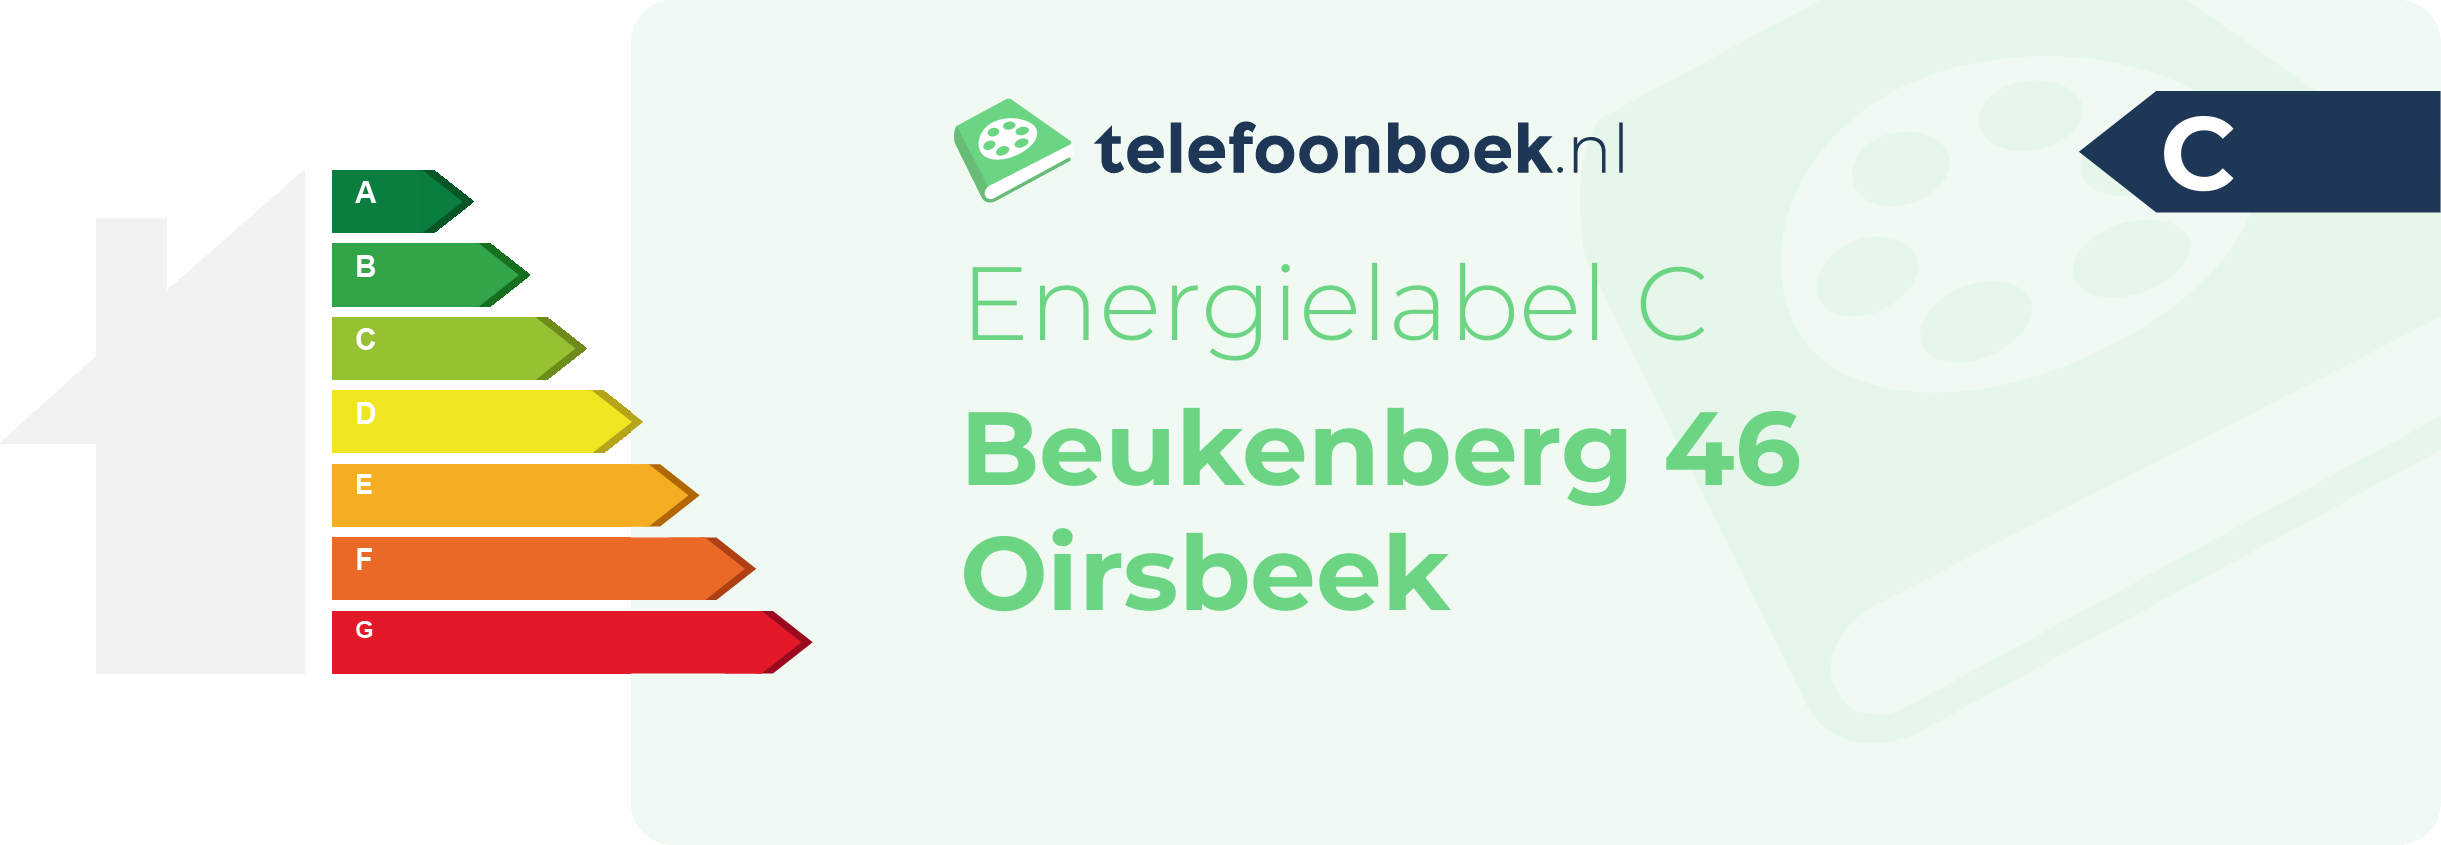 Energielabel Beukenberg 46 Oirsbeek